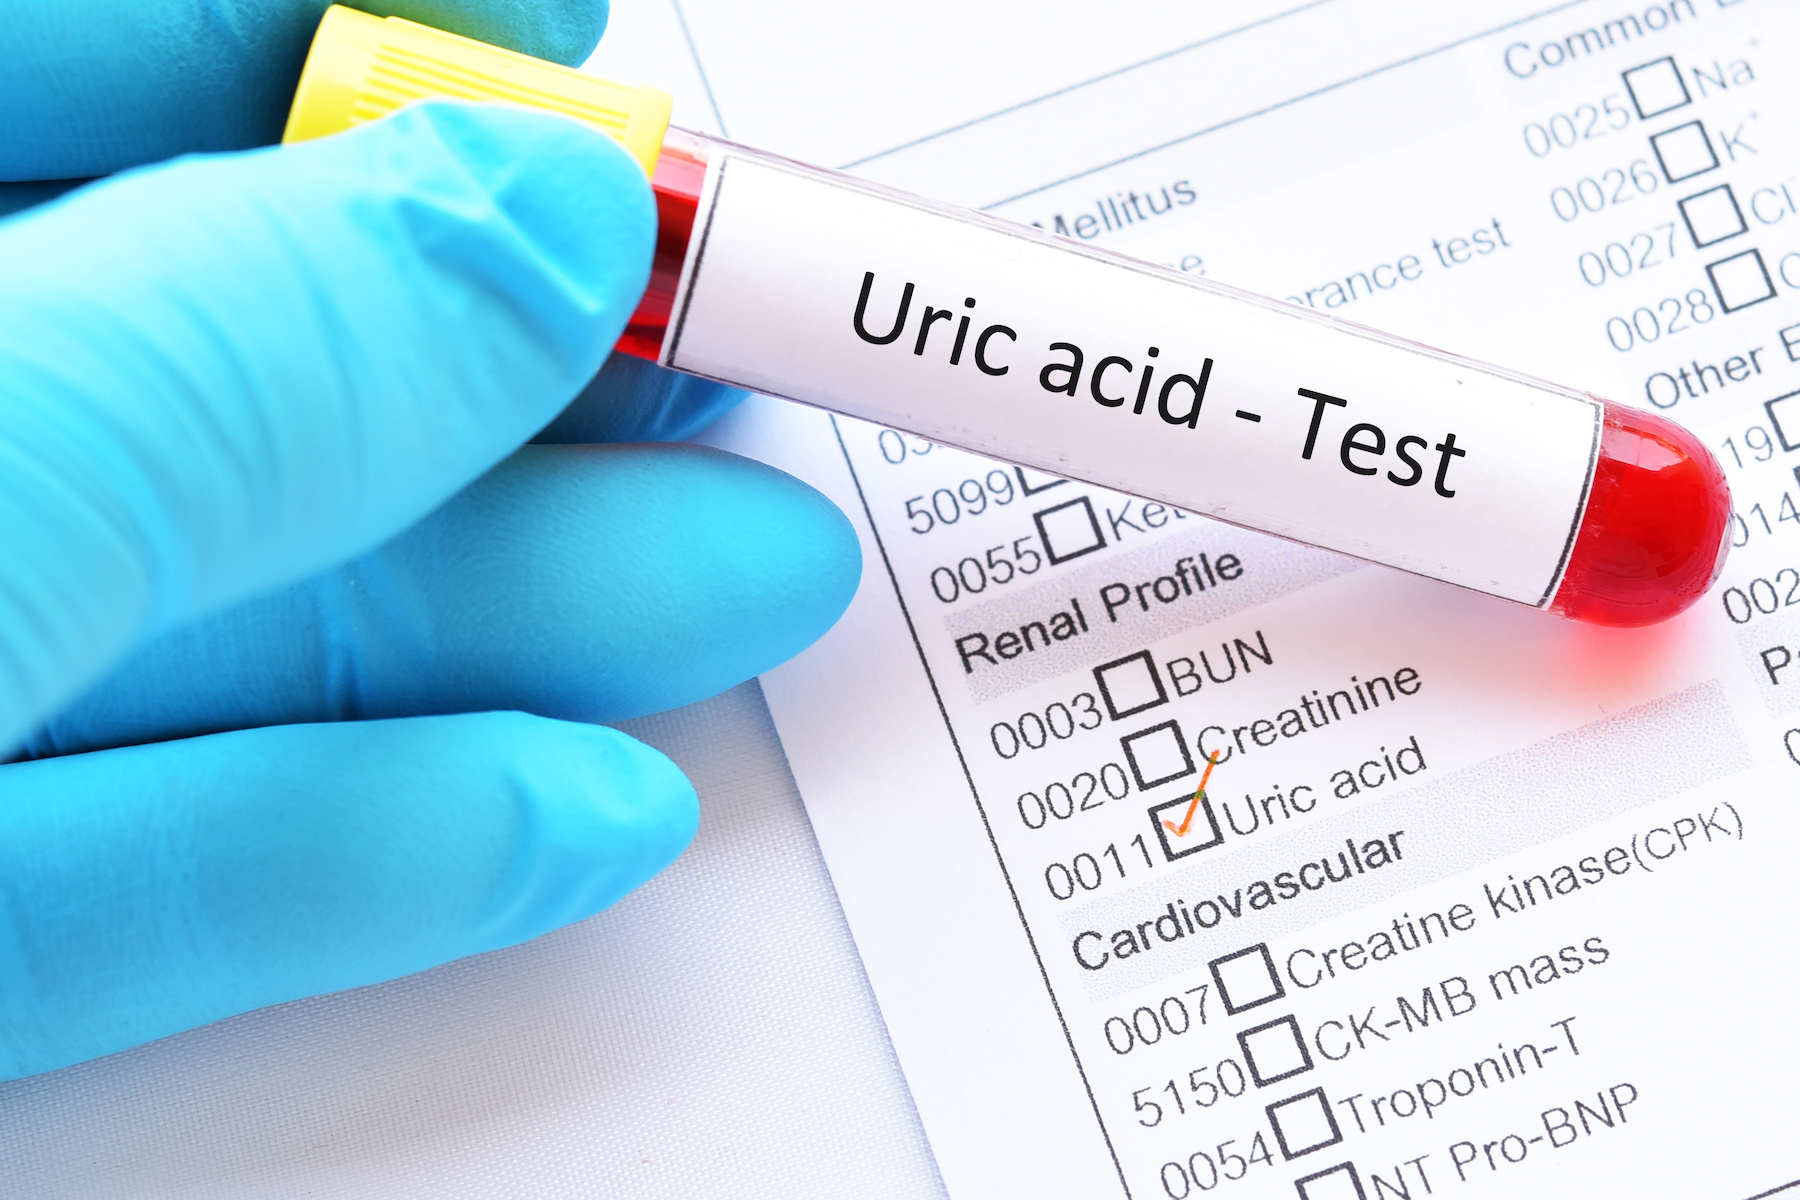 high uric acid test